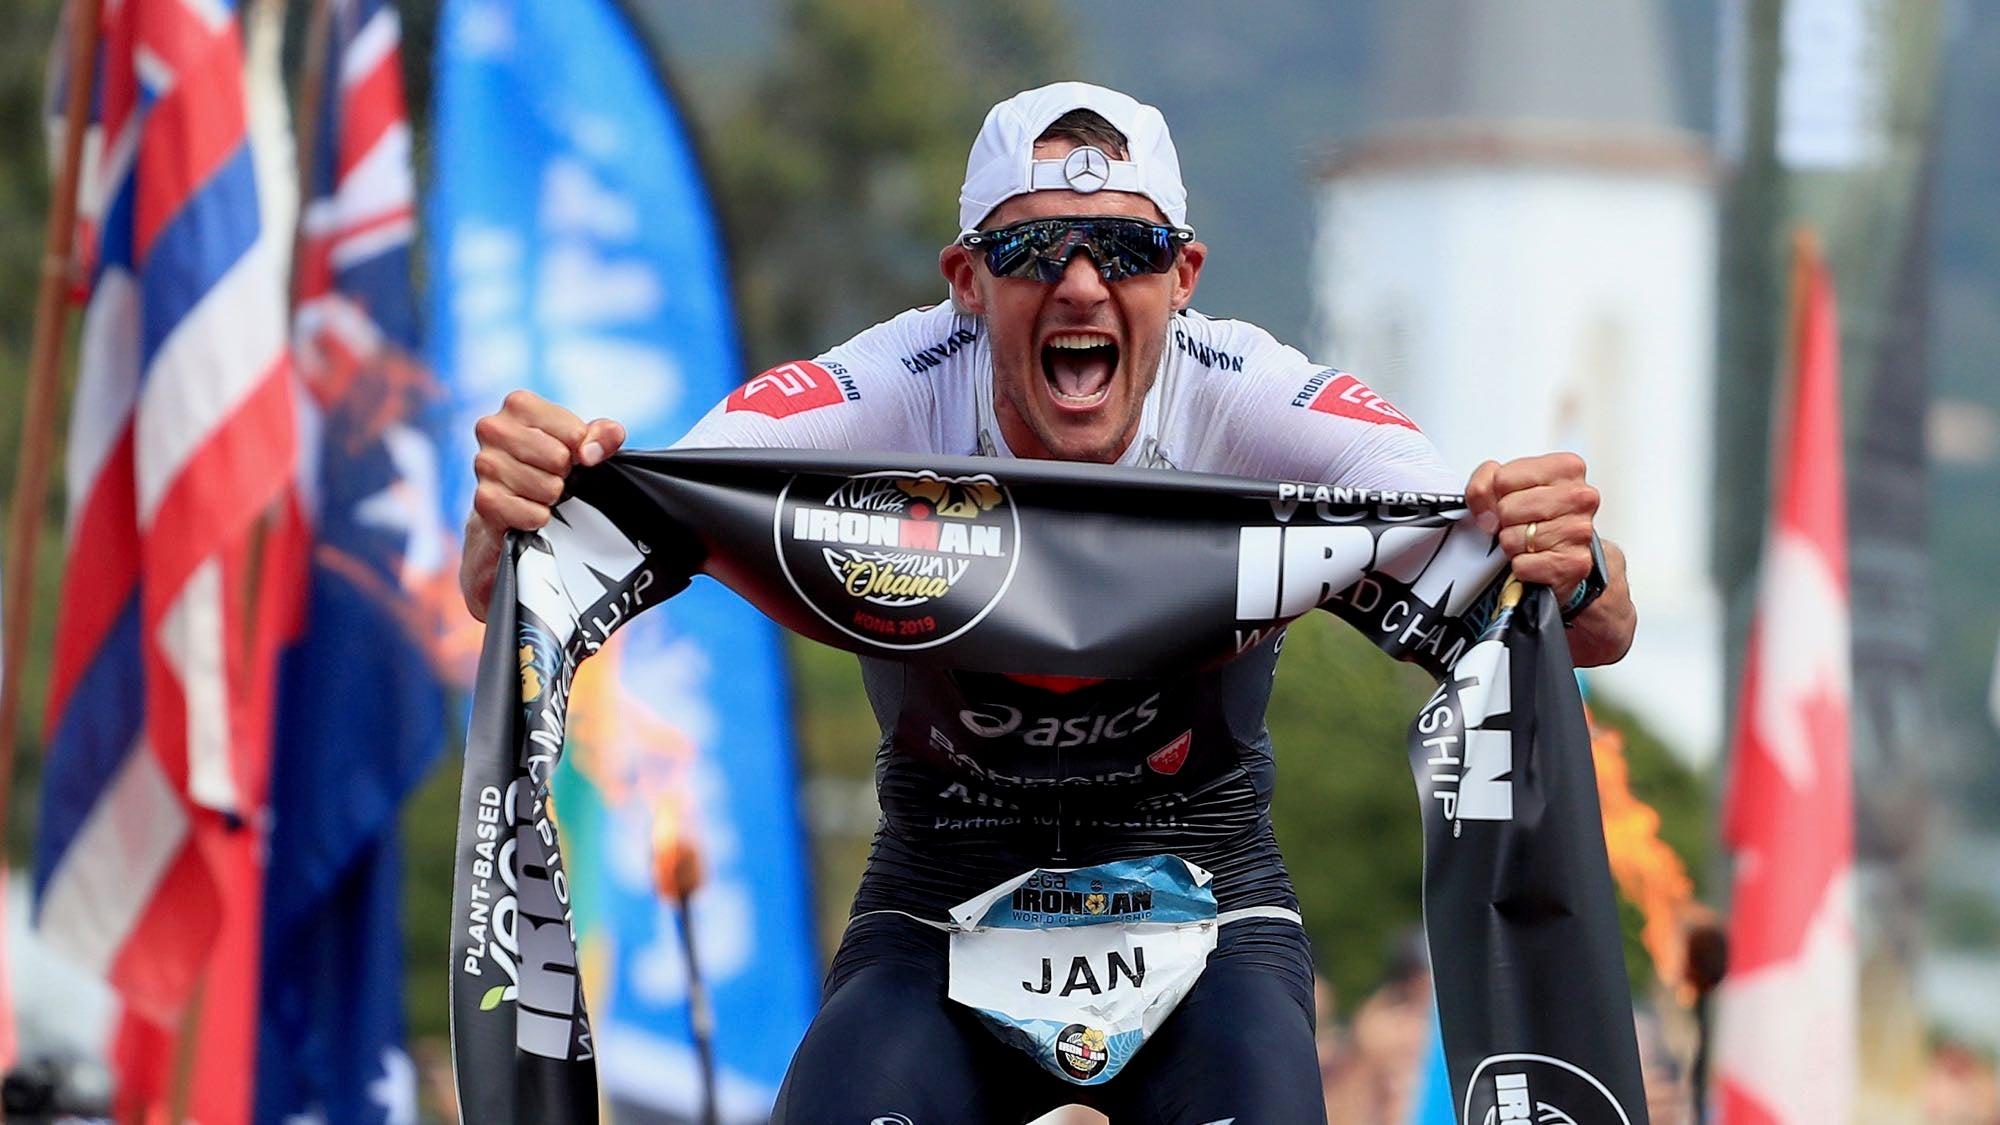 Jan Frodeno celebrates after winning 2019 Ironman World Championship